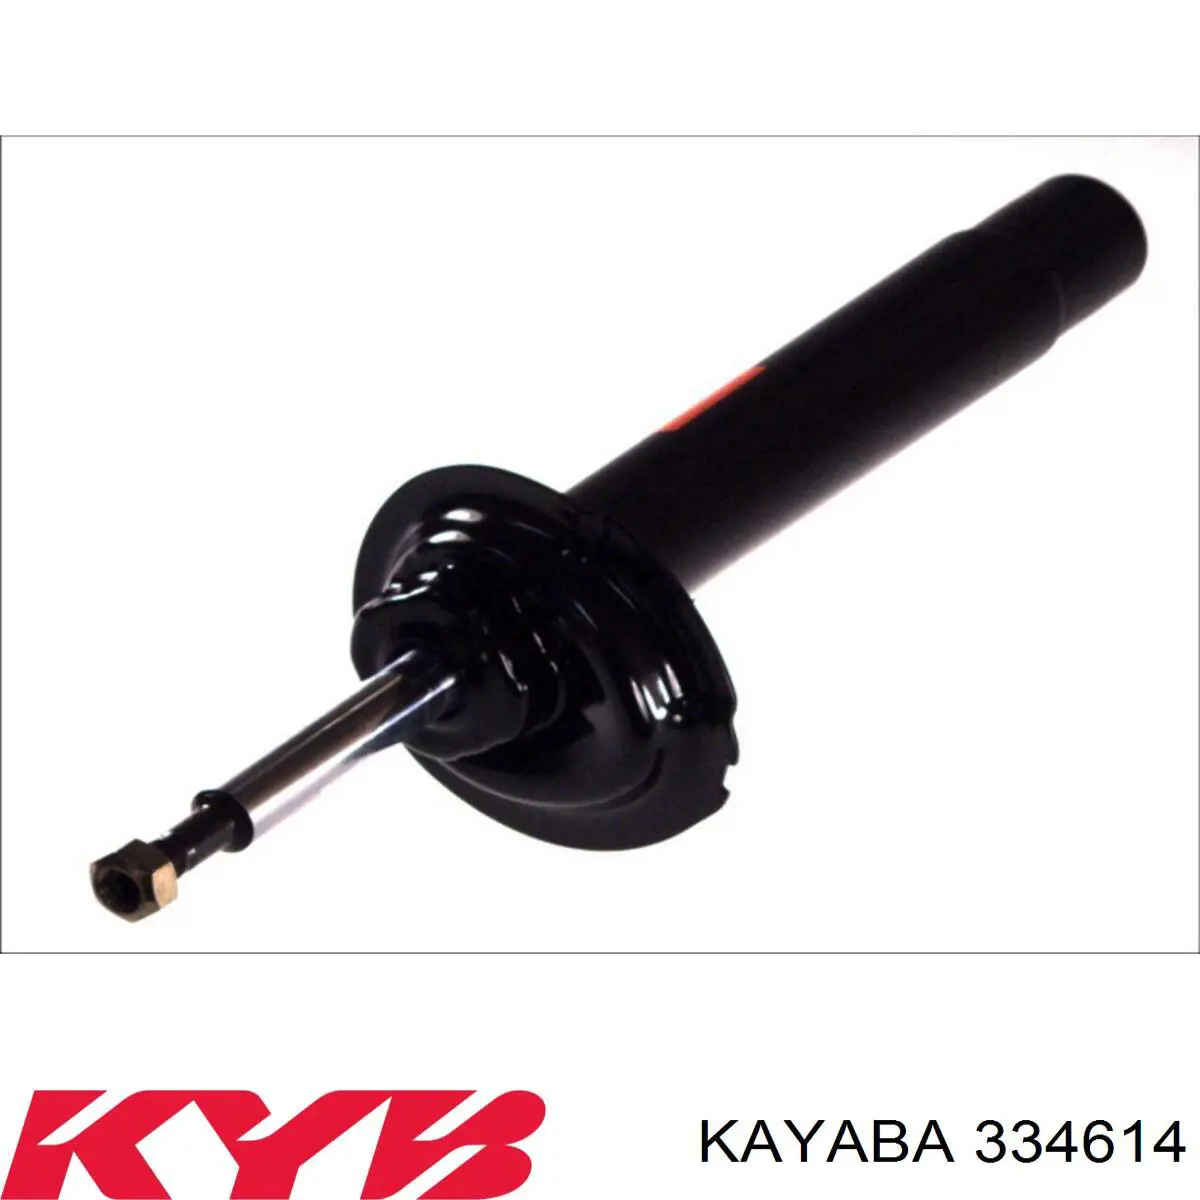 334614 Kayaba amortiguador delantero derecho